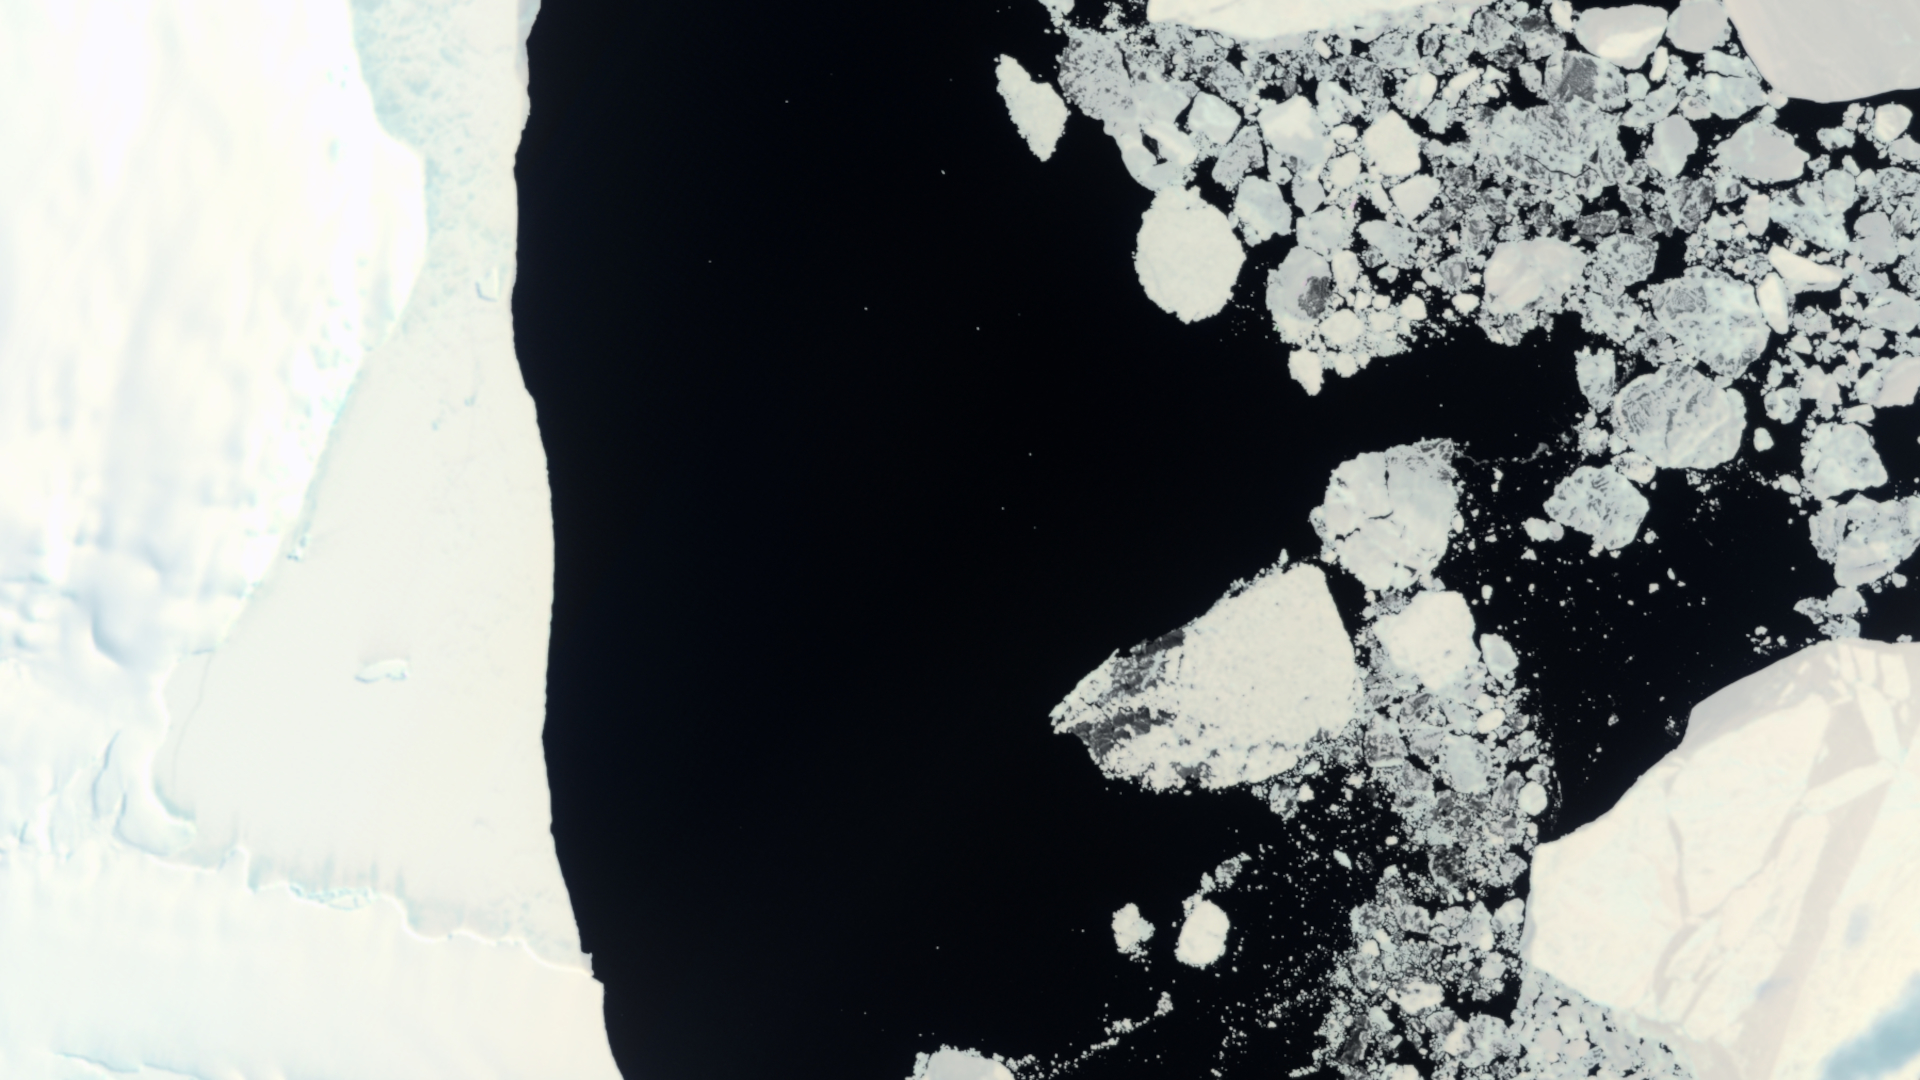 ASI - PRISMA catches the ice of Antarctica